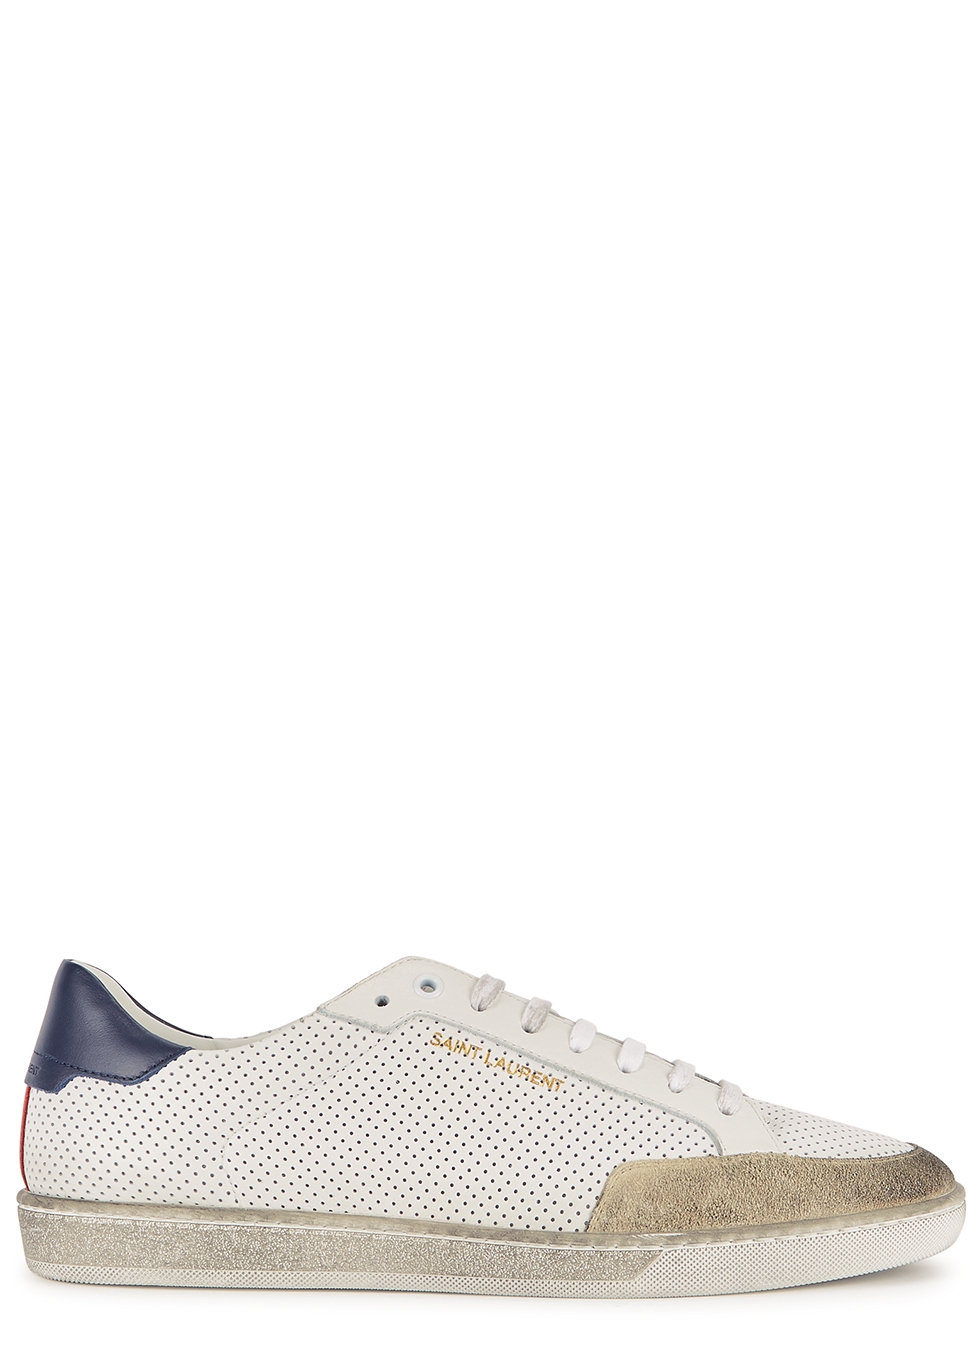 Saint Laurent Classic Court white leather sneakers - Harvey Nichols